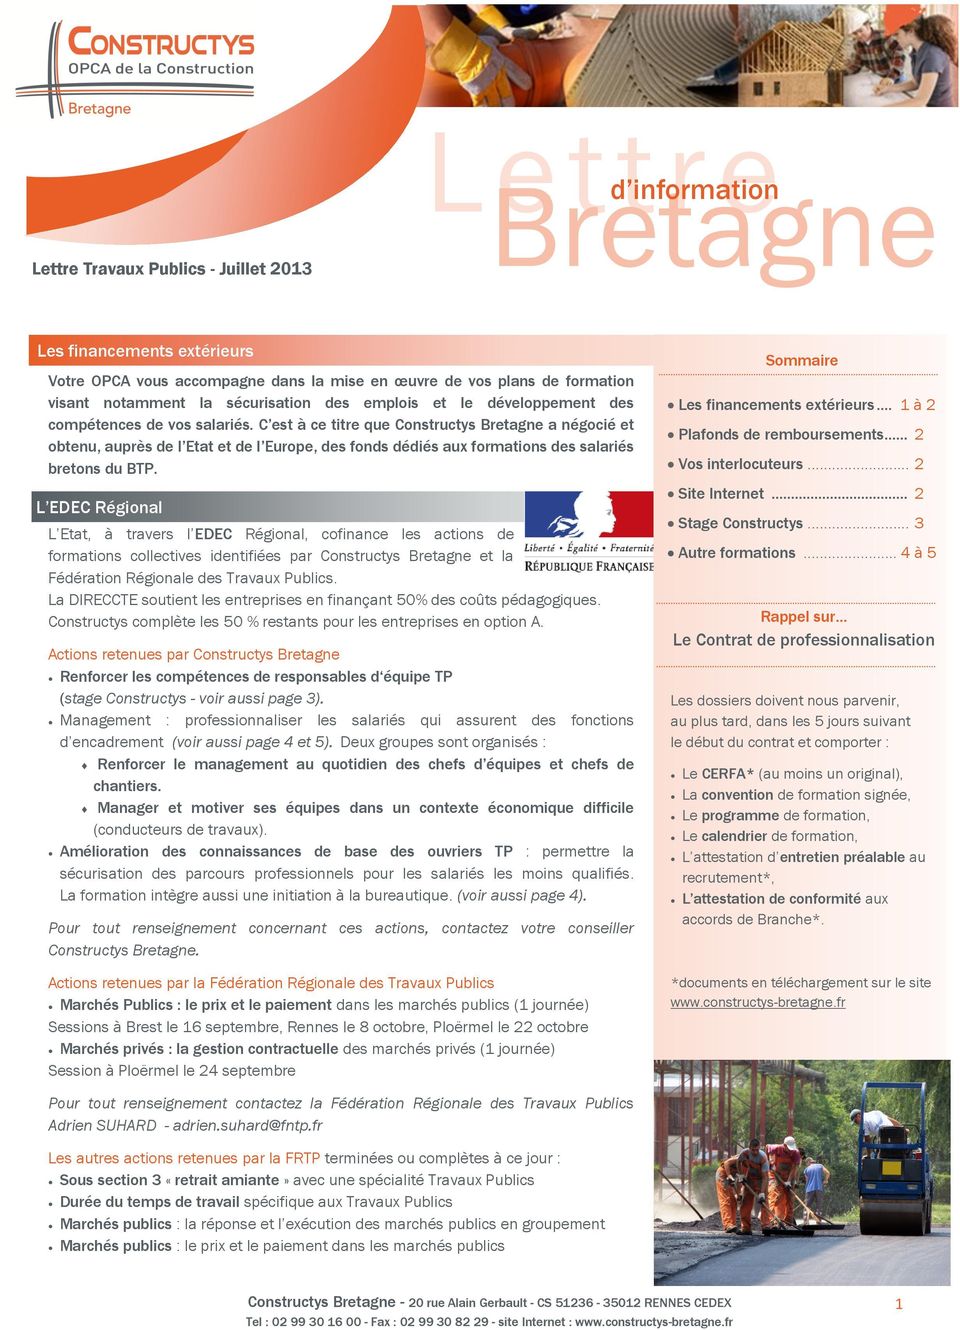 C est à ce titre que Constructys Bretagne a négocié et obtenu, auprès de l Etat et de l Europe, des fonds dédiés aux formations des salariés bretons du BTP.